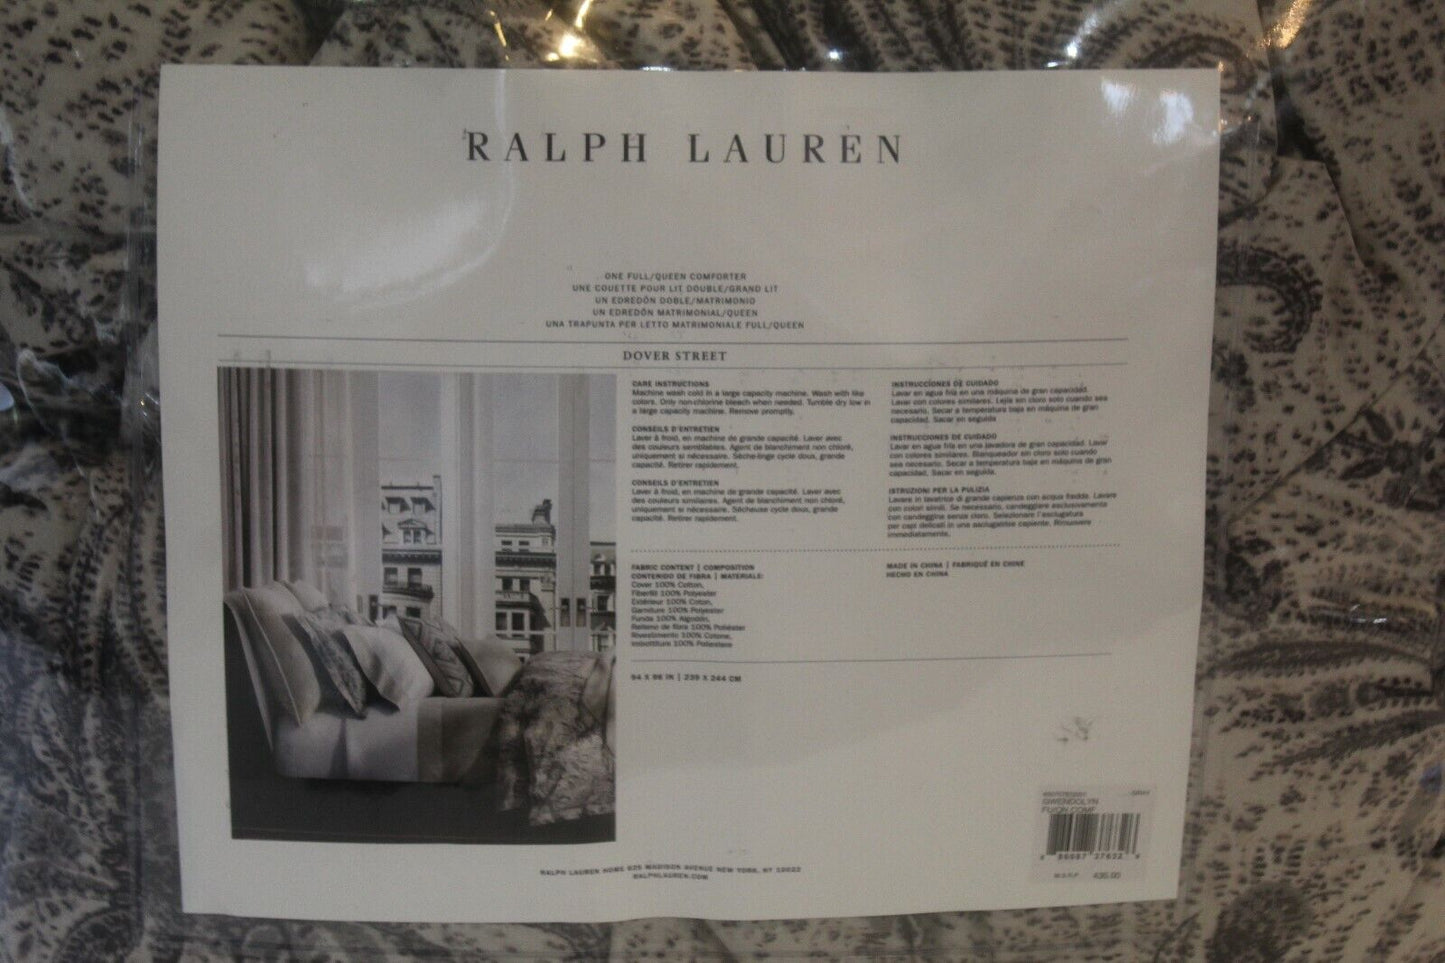 *NWT* $430 Value - RALPH LAUREN Dover Street Floral Full/Queen Comforter 96" x 94"